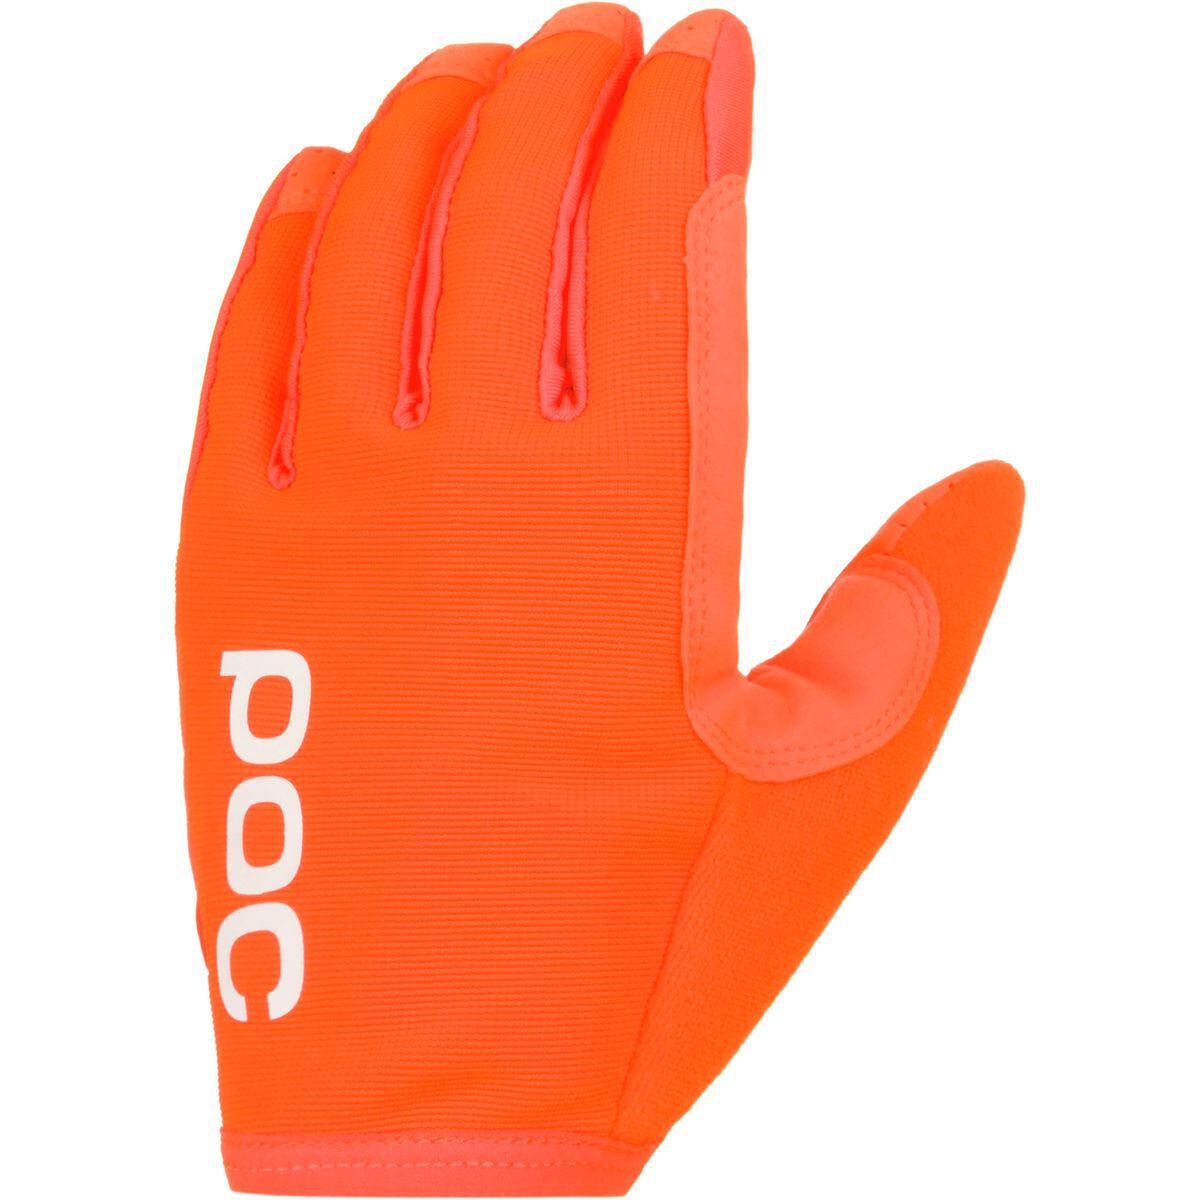 POC AVIP Full-Finger Glove - Men's